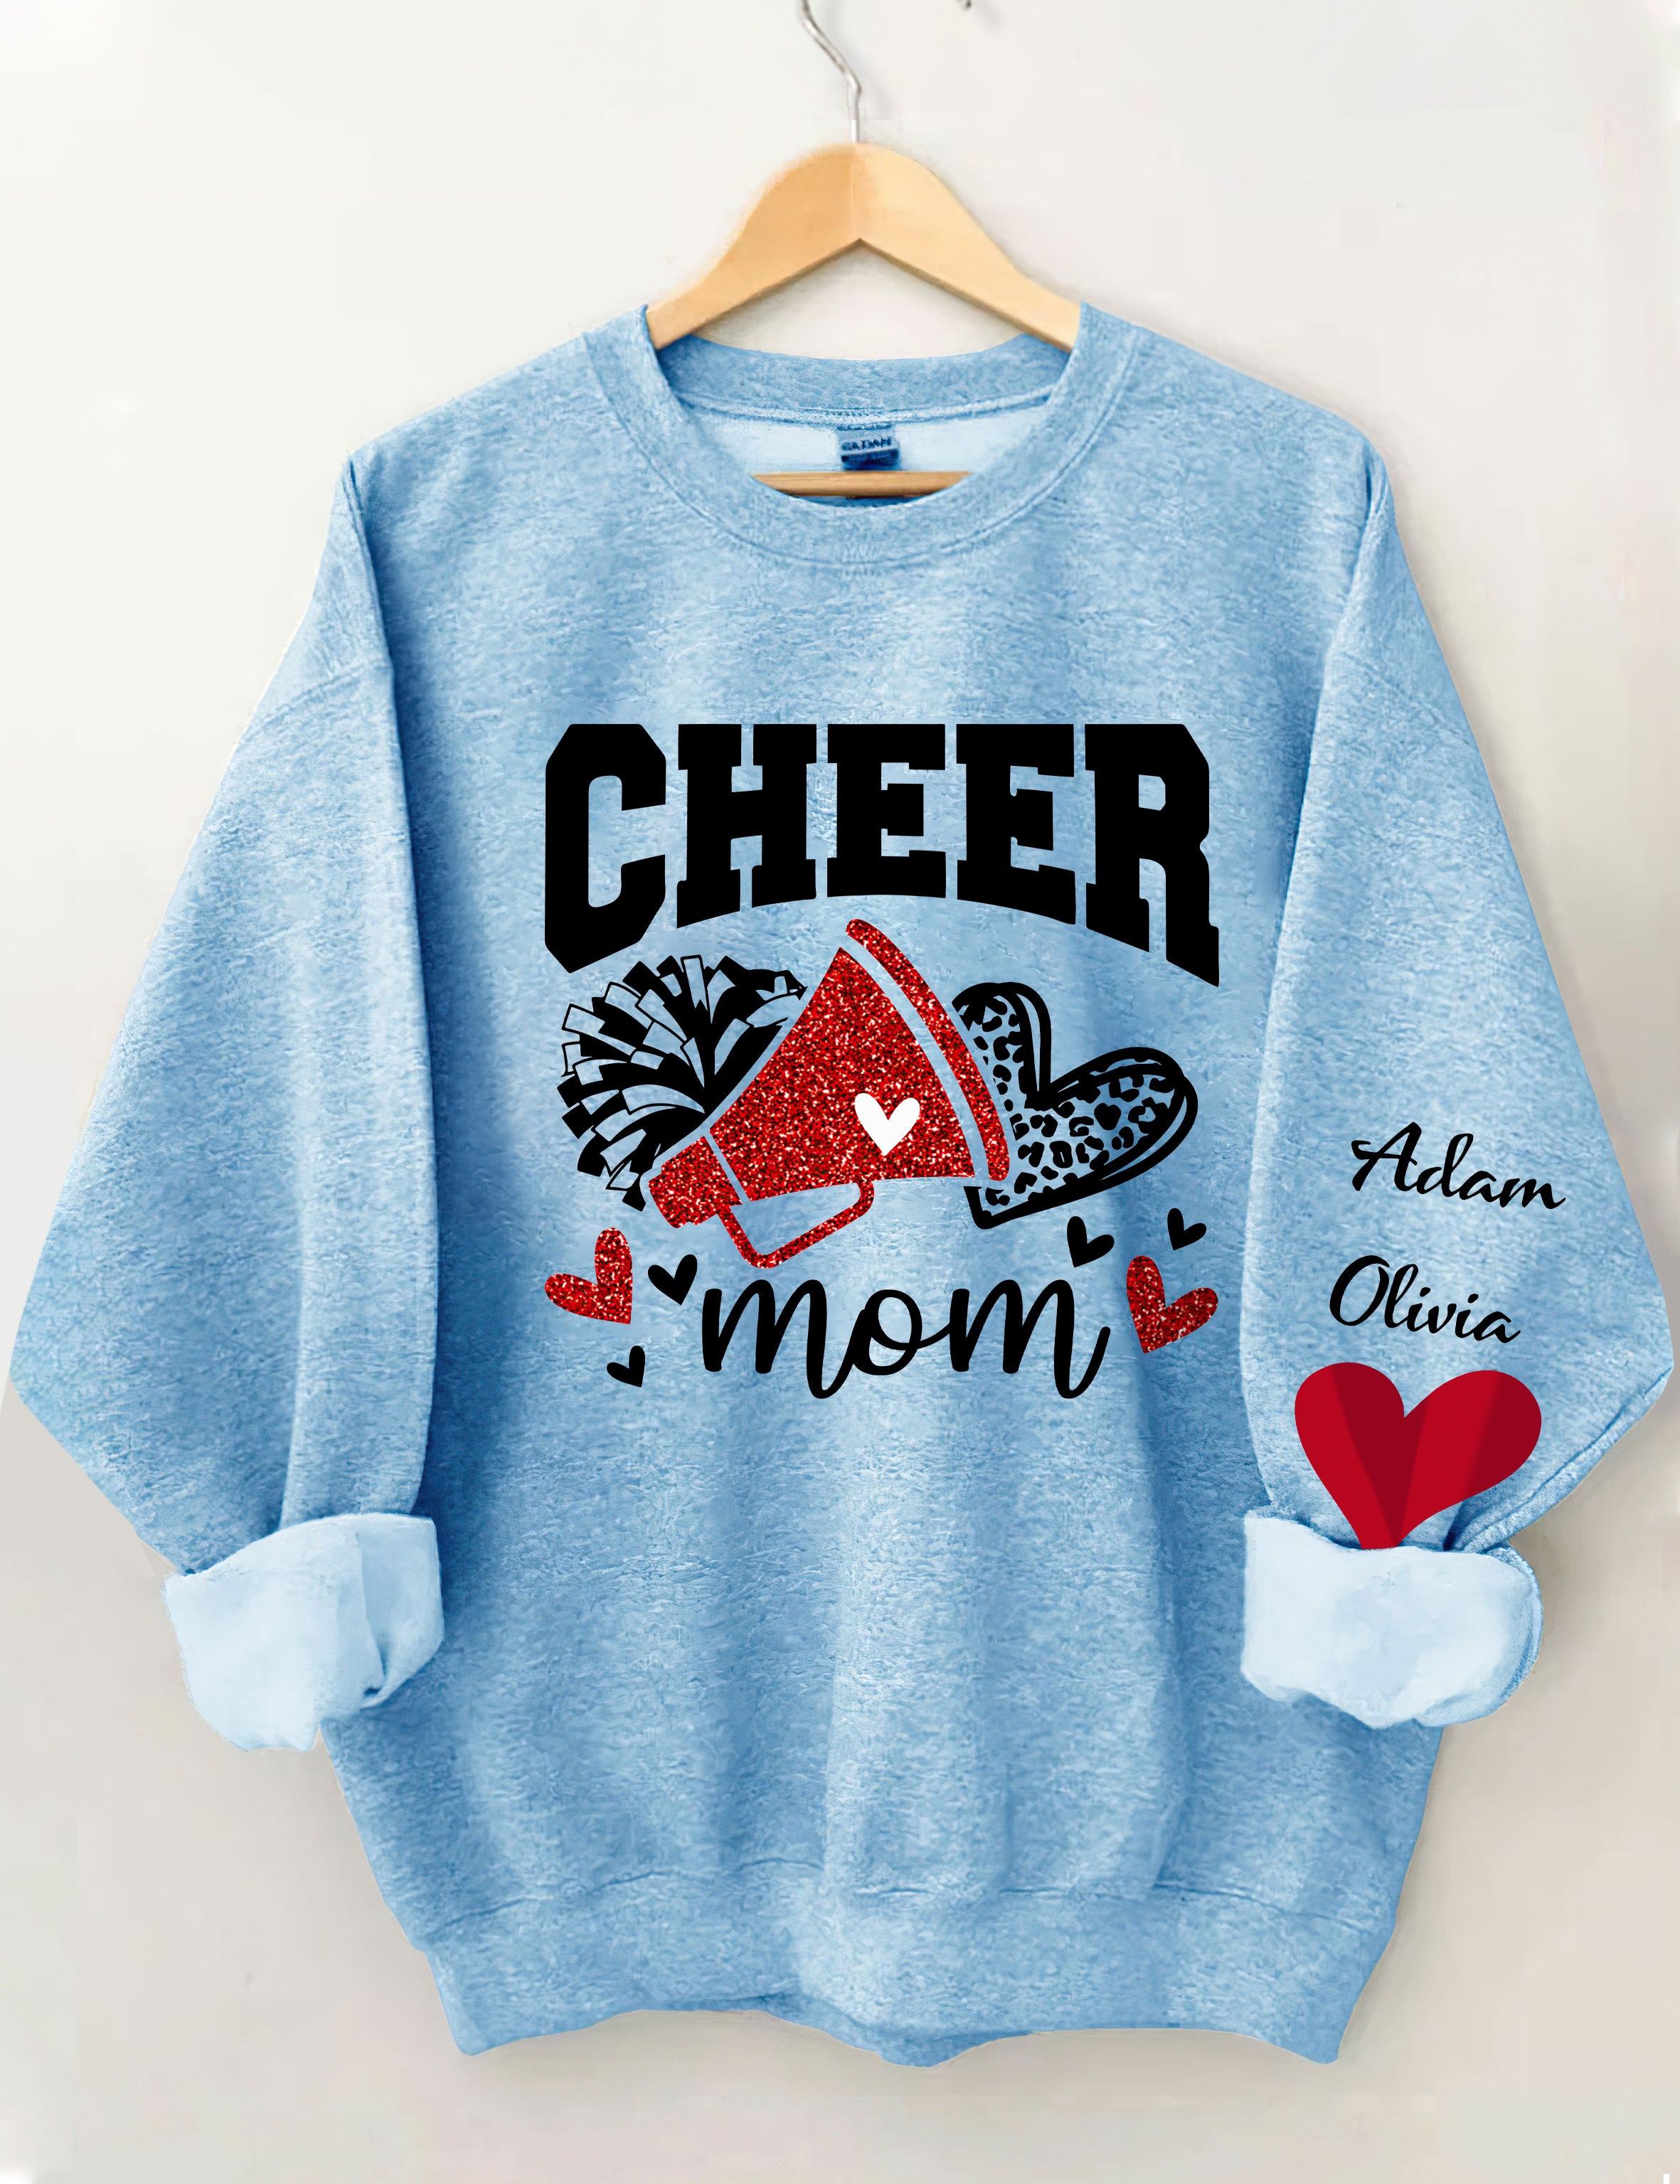 Cheer Mom Sweatshirt